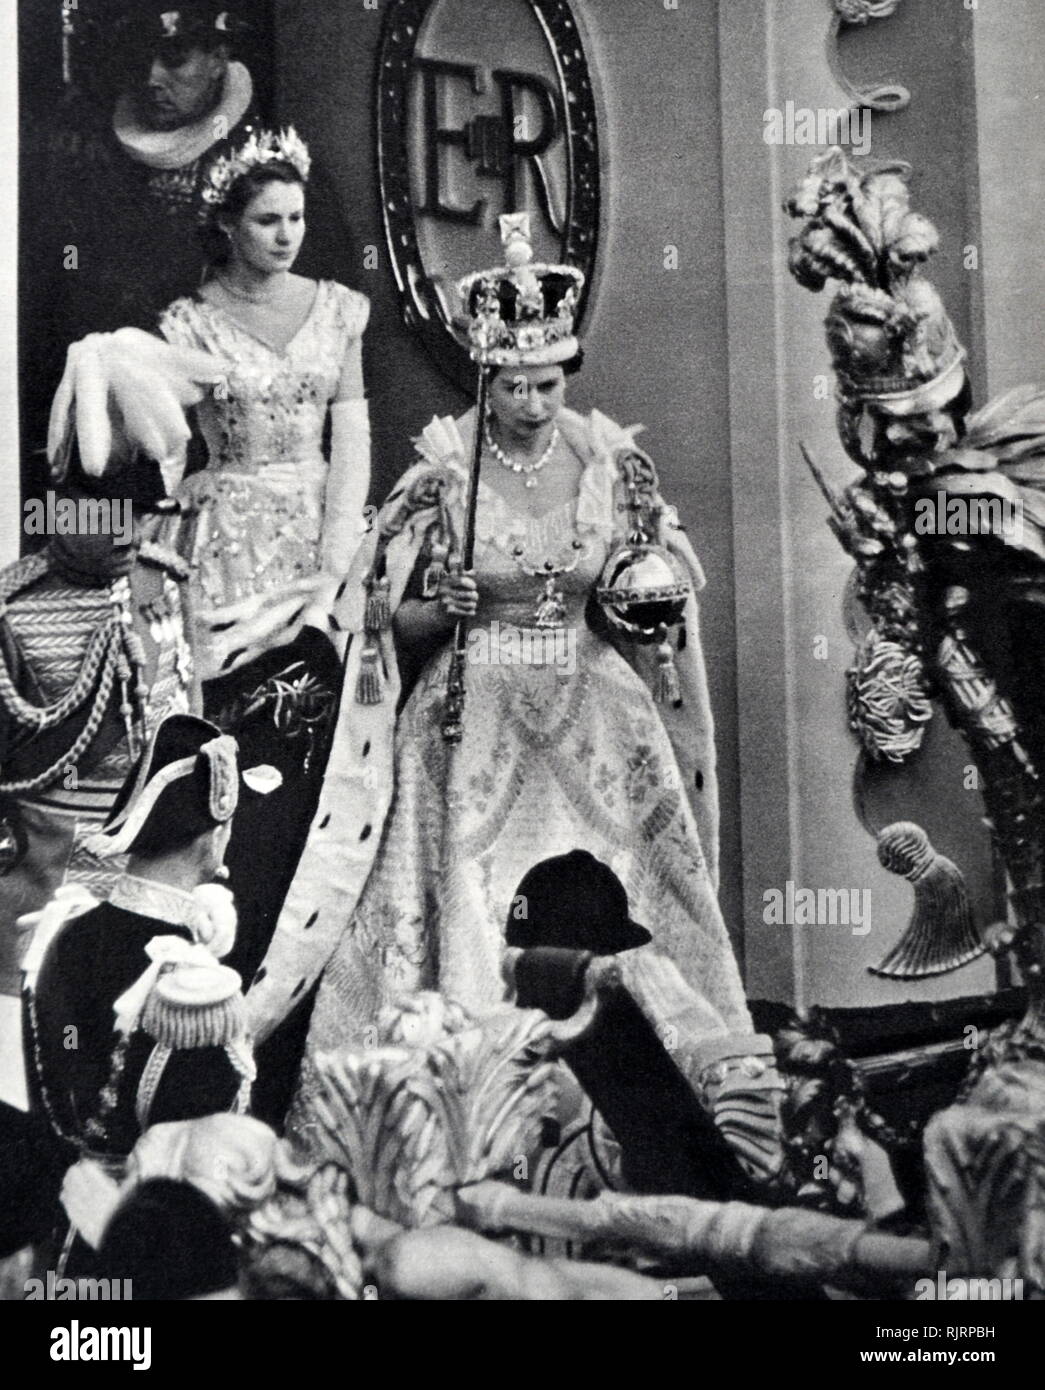 Konigin Elizabeth Ii Bei Ihrer Kronung 1953 13 10 Stockfotografie Alamy